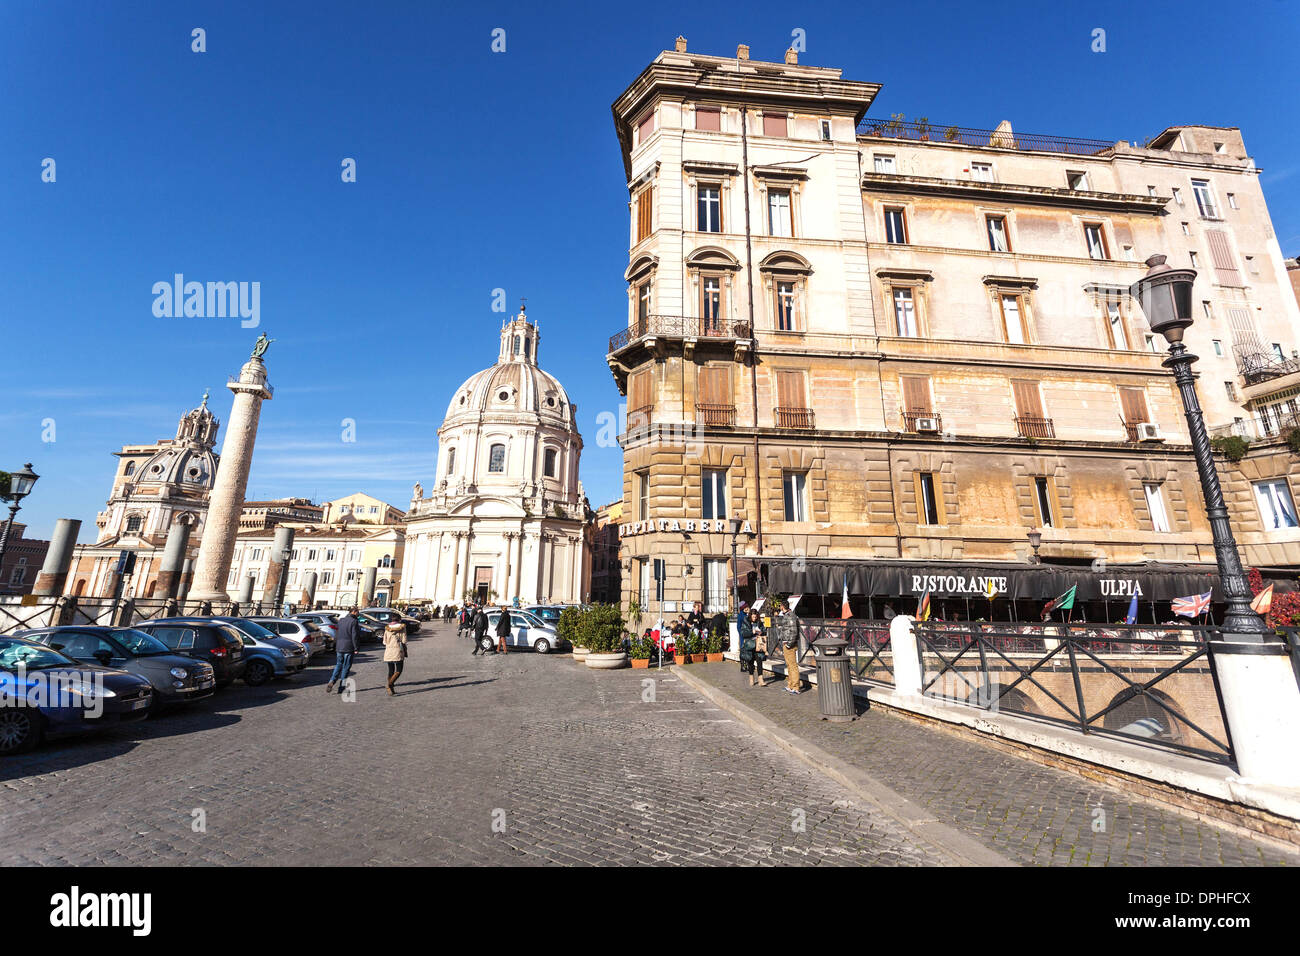 La Colonne Trajane et de l'église de Santa Maria di Loreto, Rome, Italie Banque D'Images